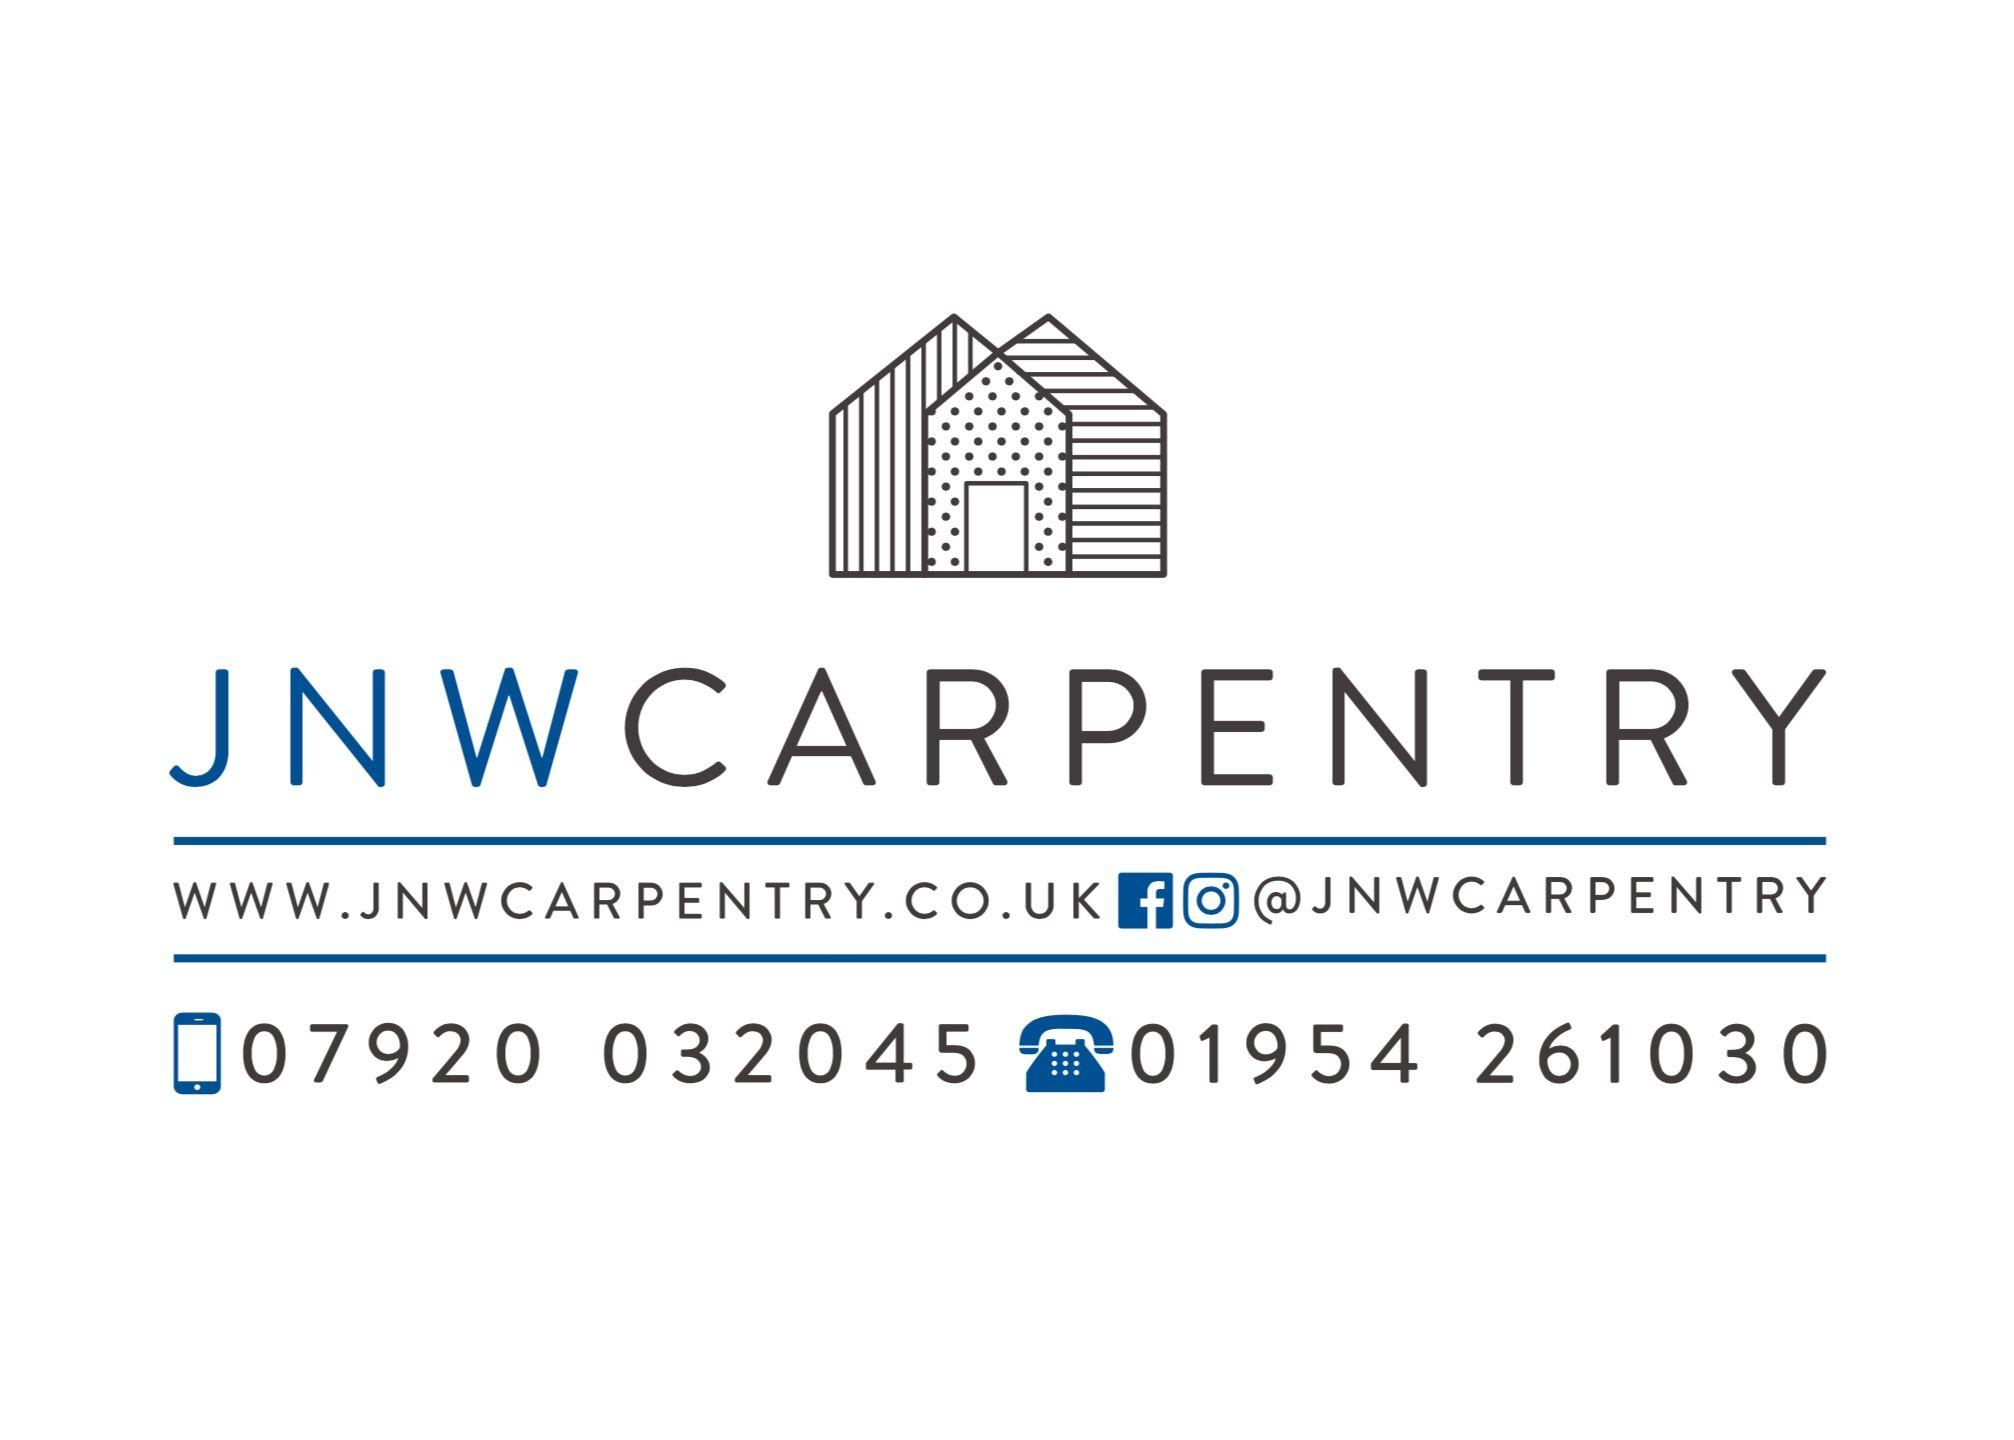 Carpenter Company Logo - JNW Carpentry. Company logo. JNW Carpentry in 2018